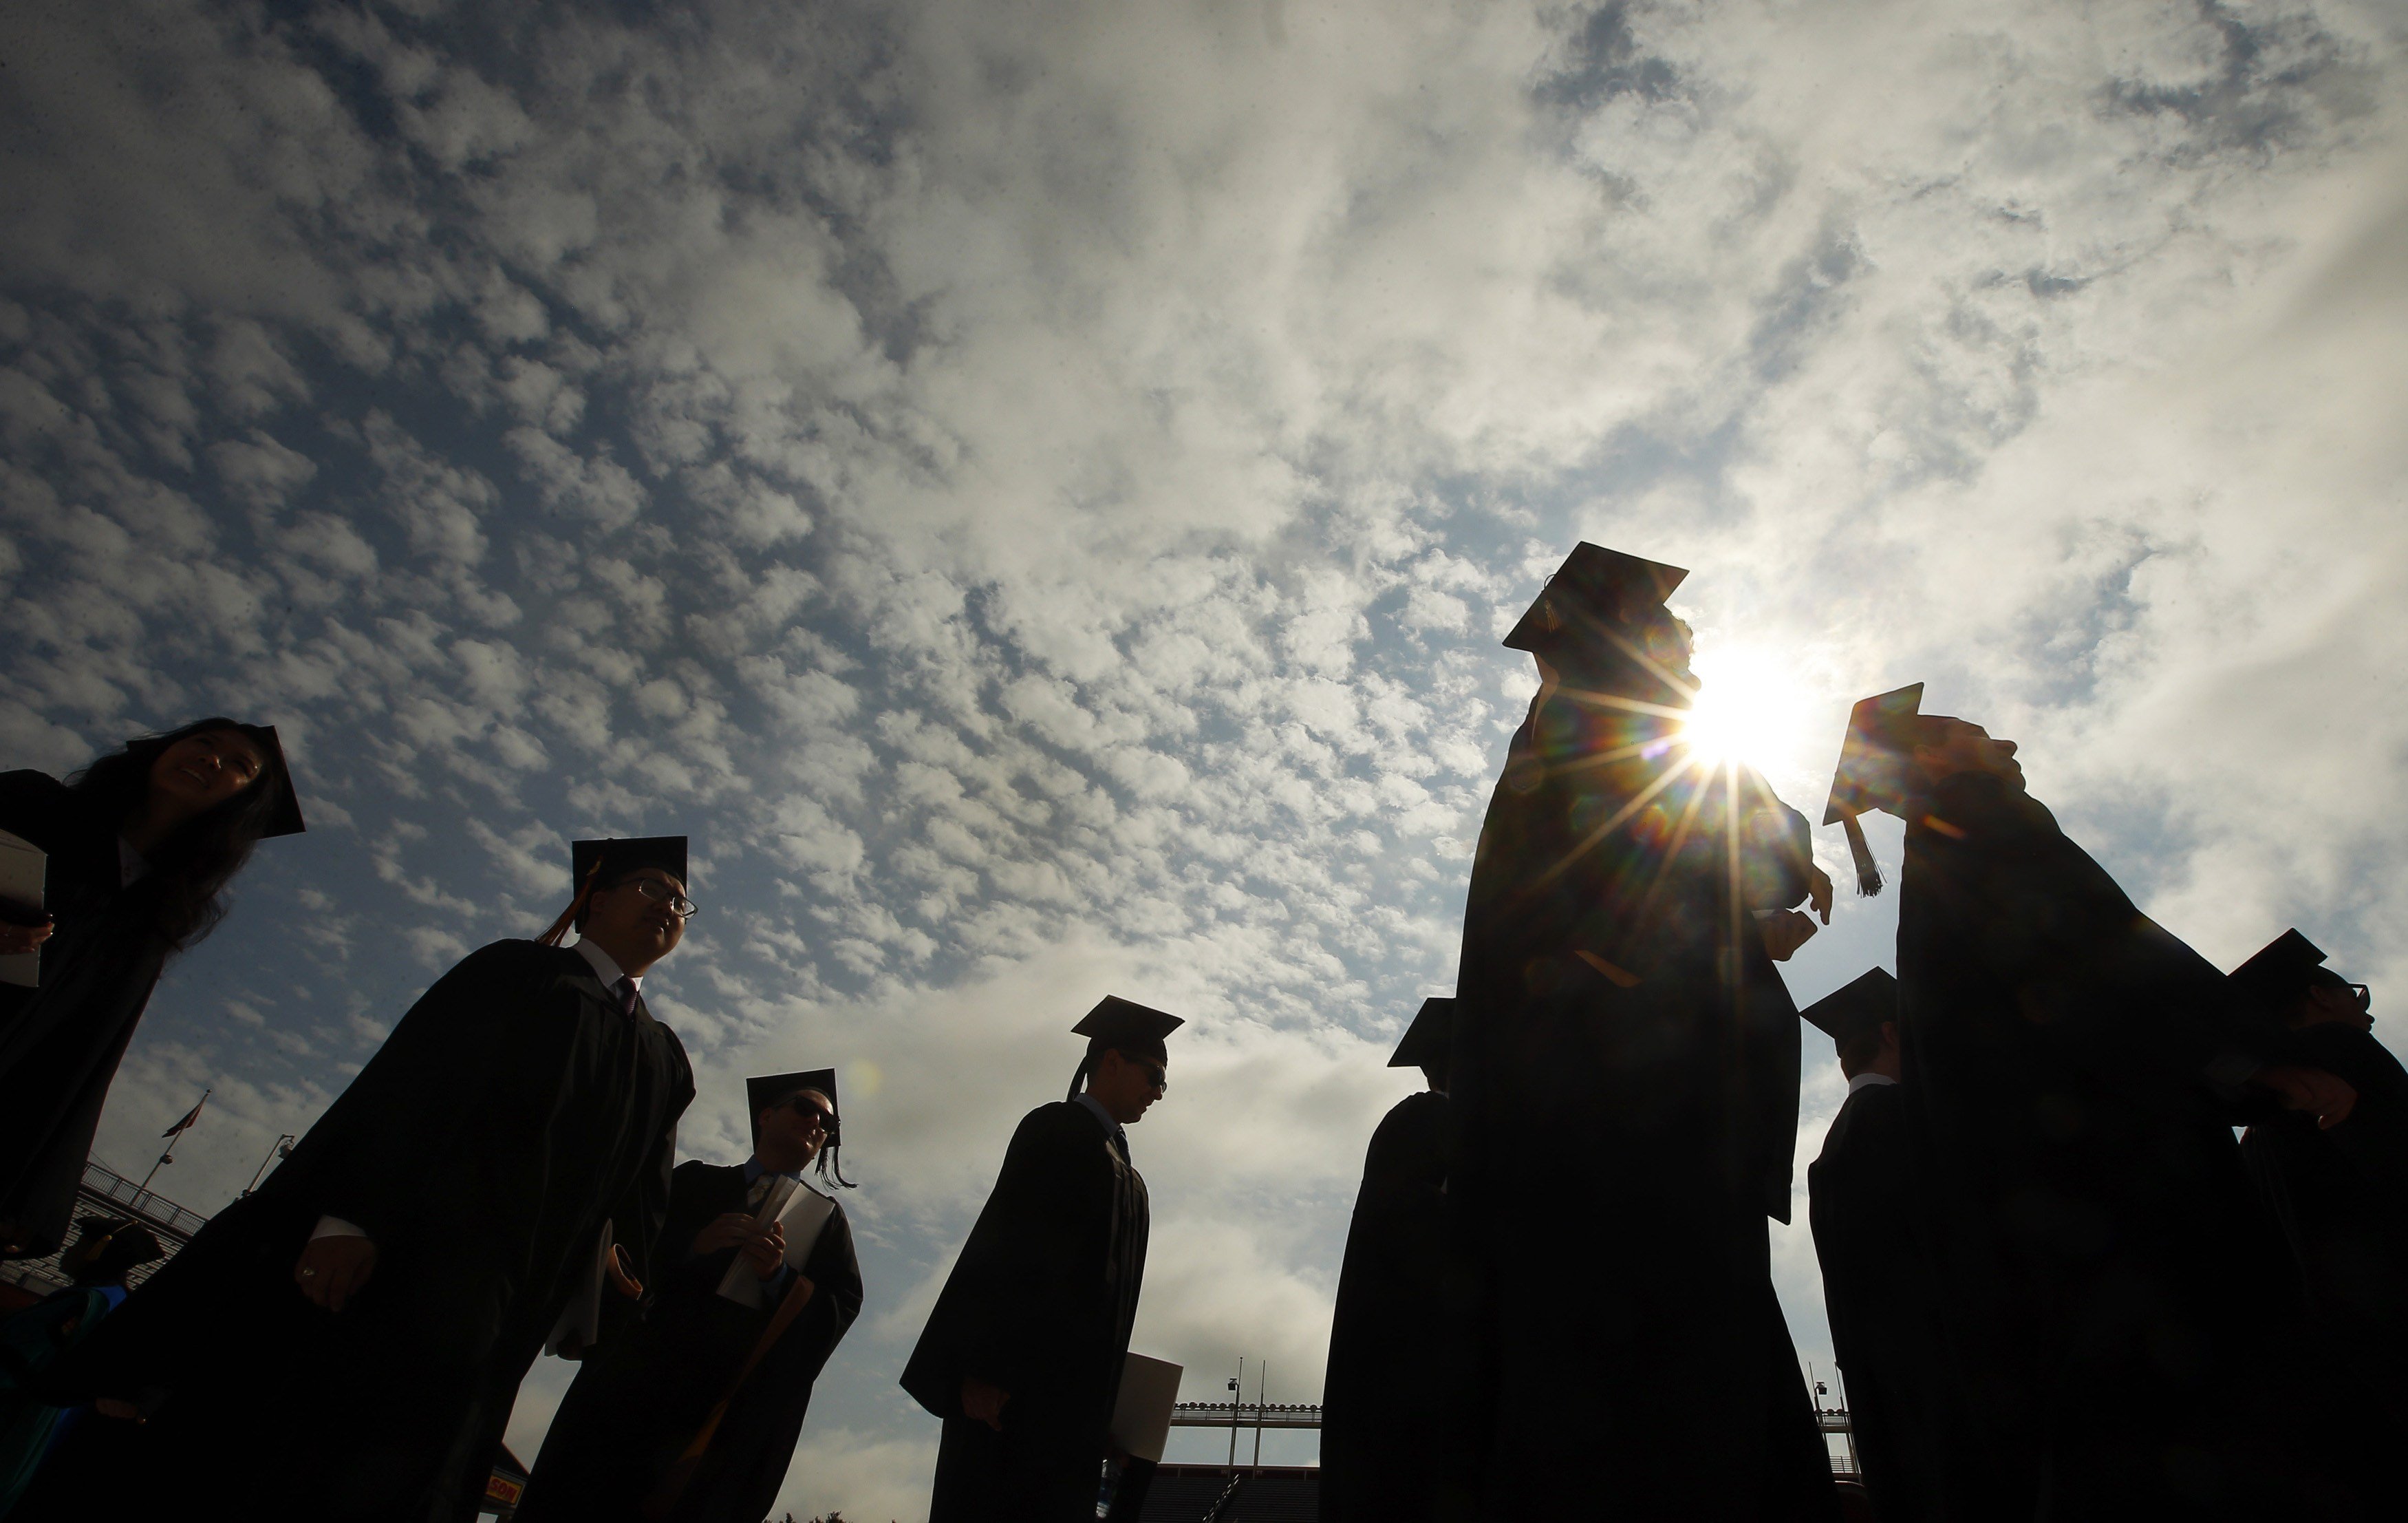 graduating students photo reuters